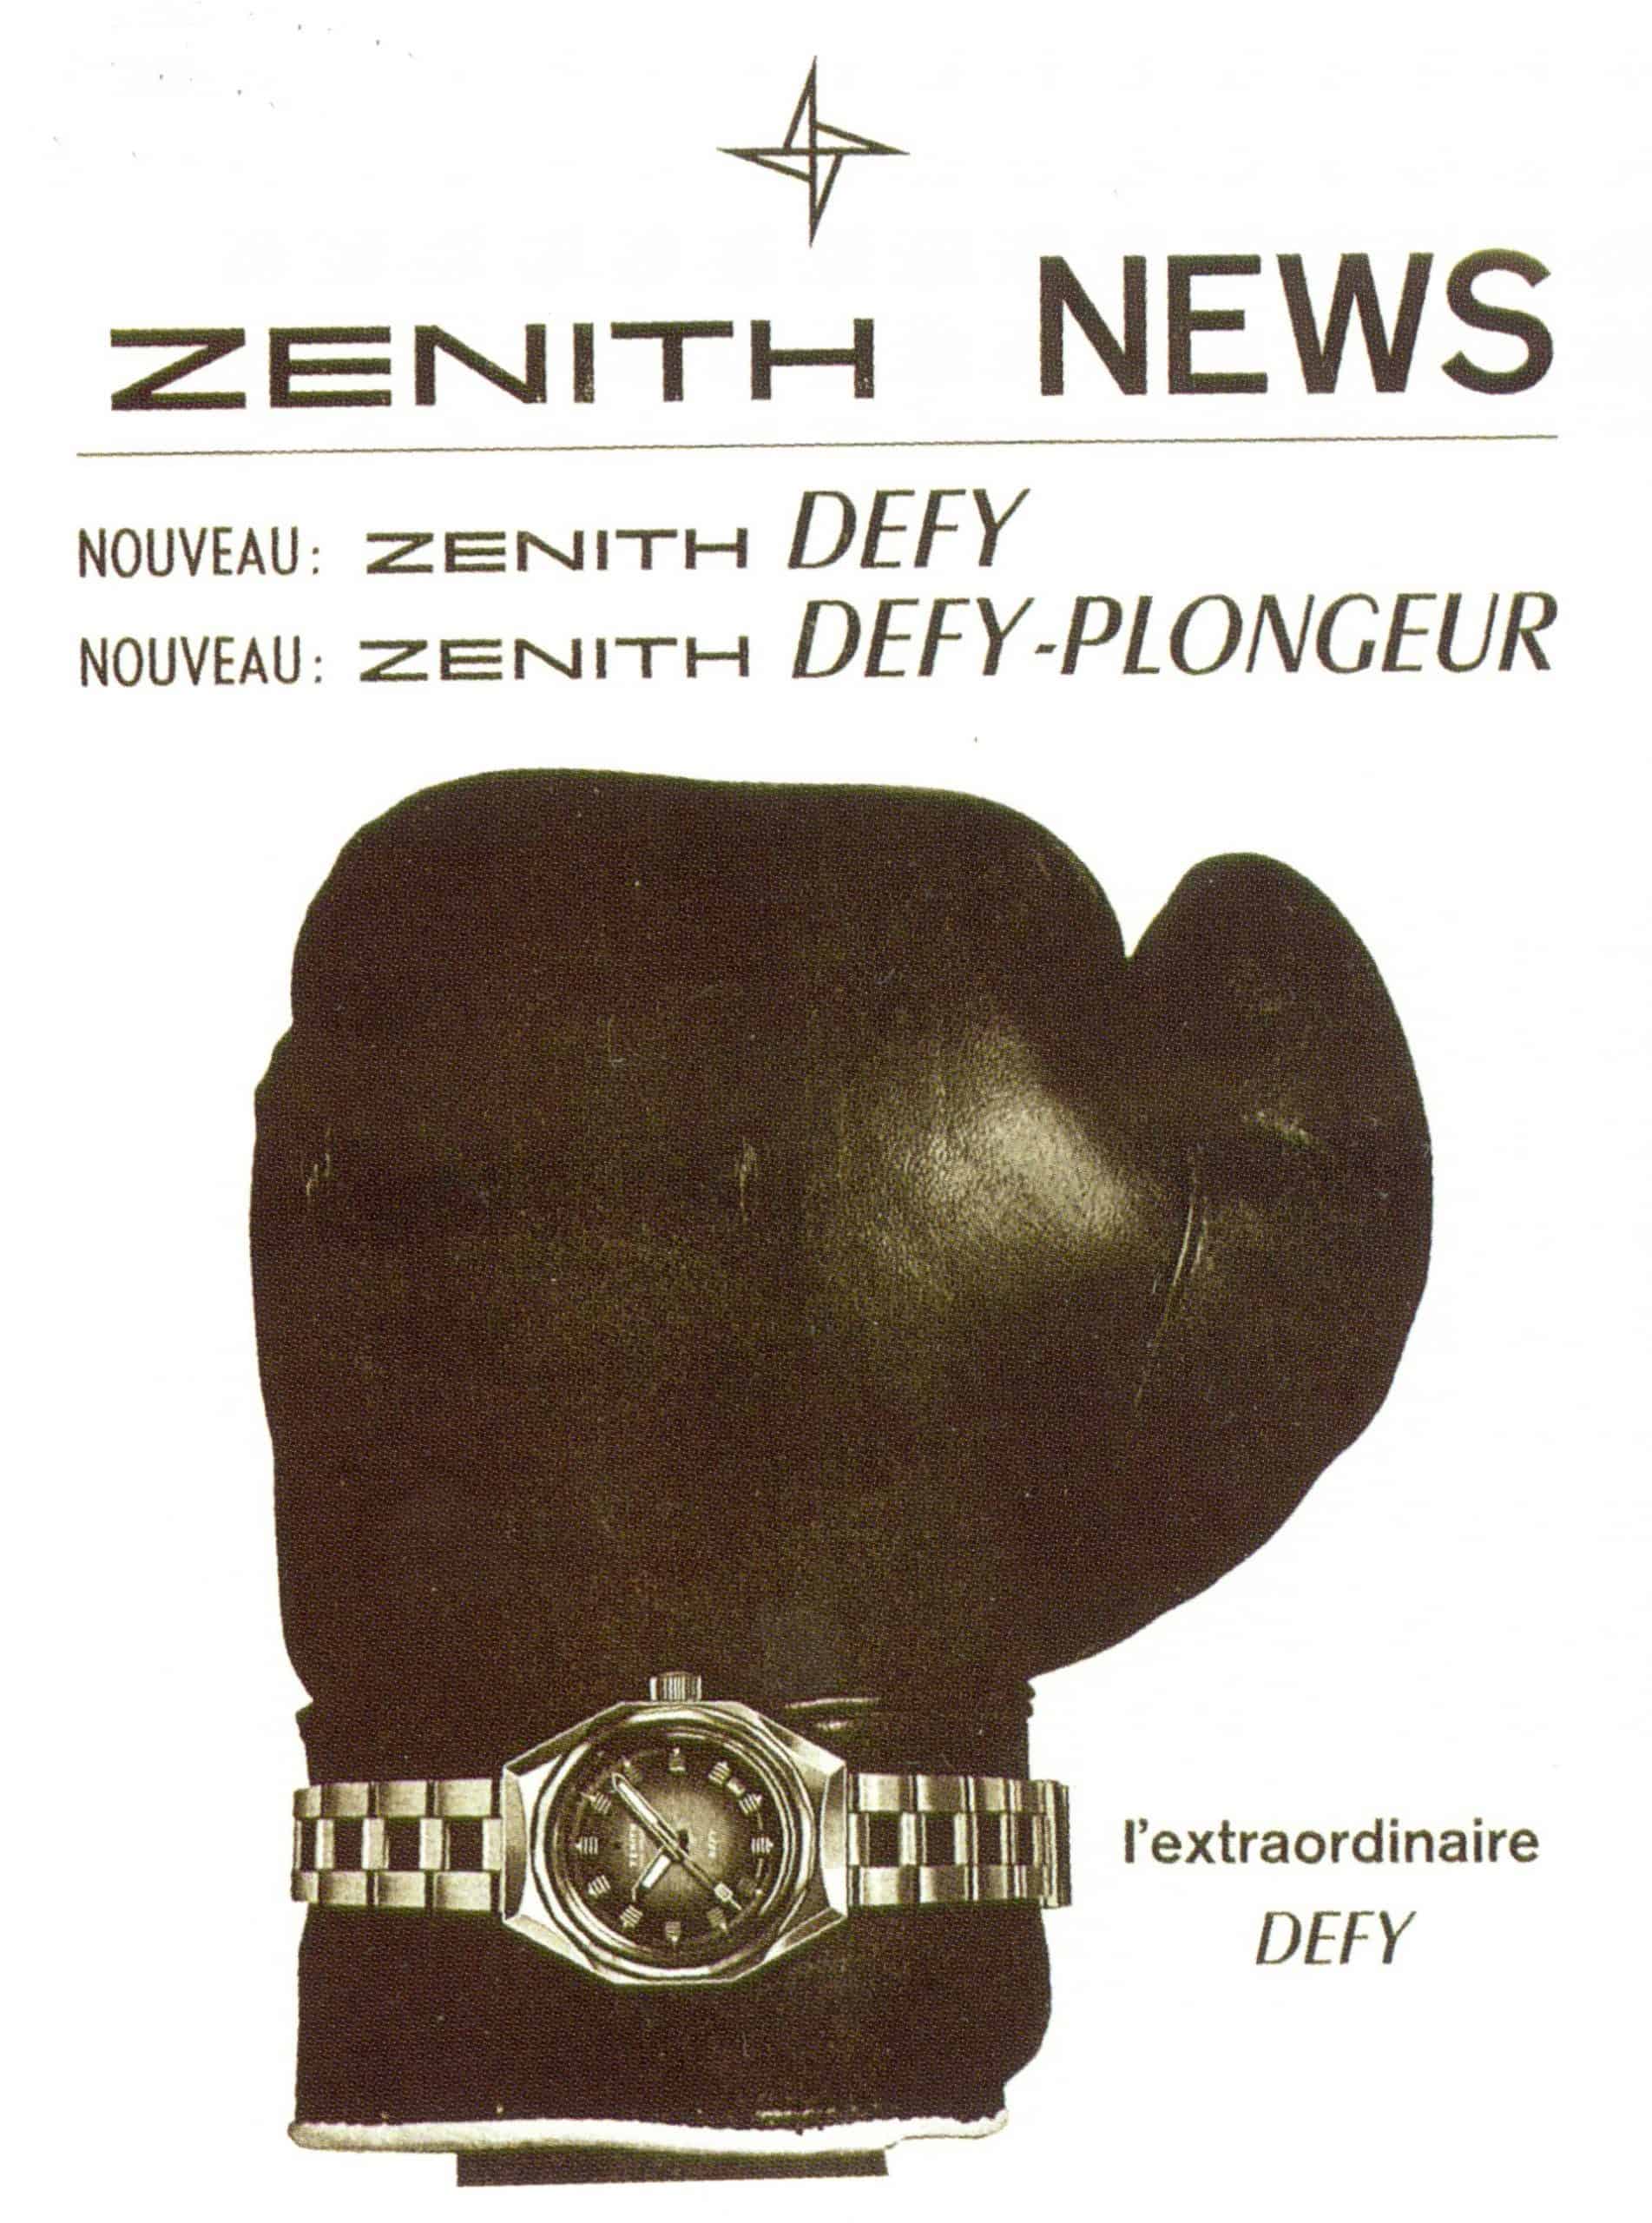 Eine Zenith Anzeige für eine Defy Taucheruhr aus den 1970er Jahren